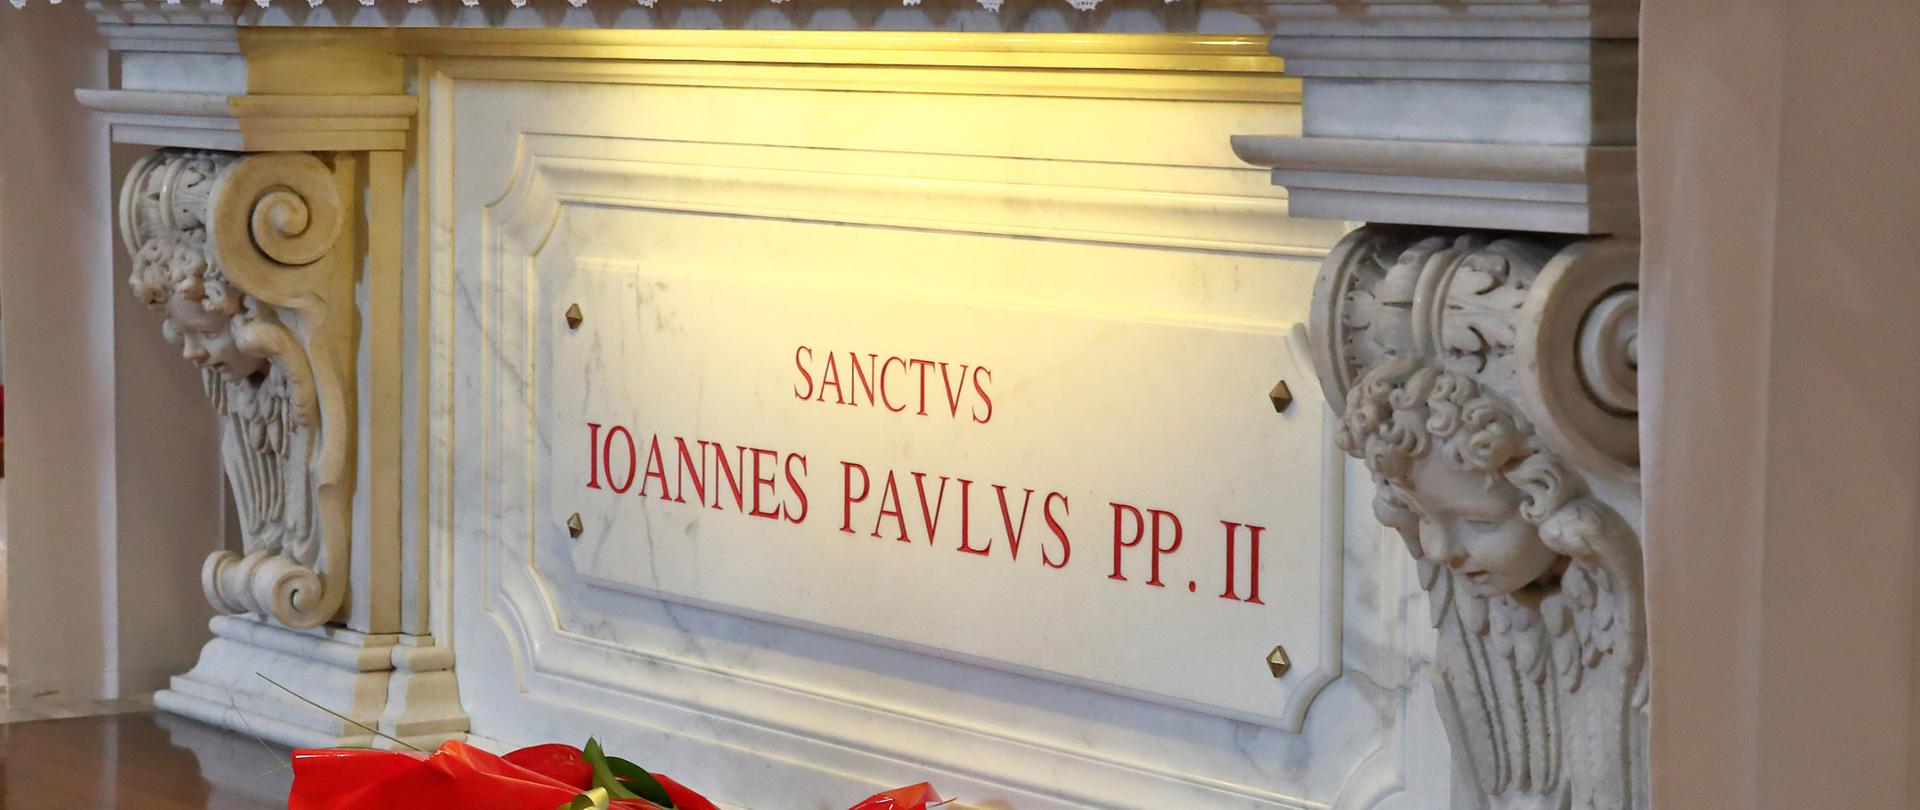 2.04.2019 Bazylika Watykańska, kaplica św. Sebastiana. Grob św. Jana Pawła II w 14. rocznicę śmierci.